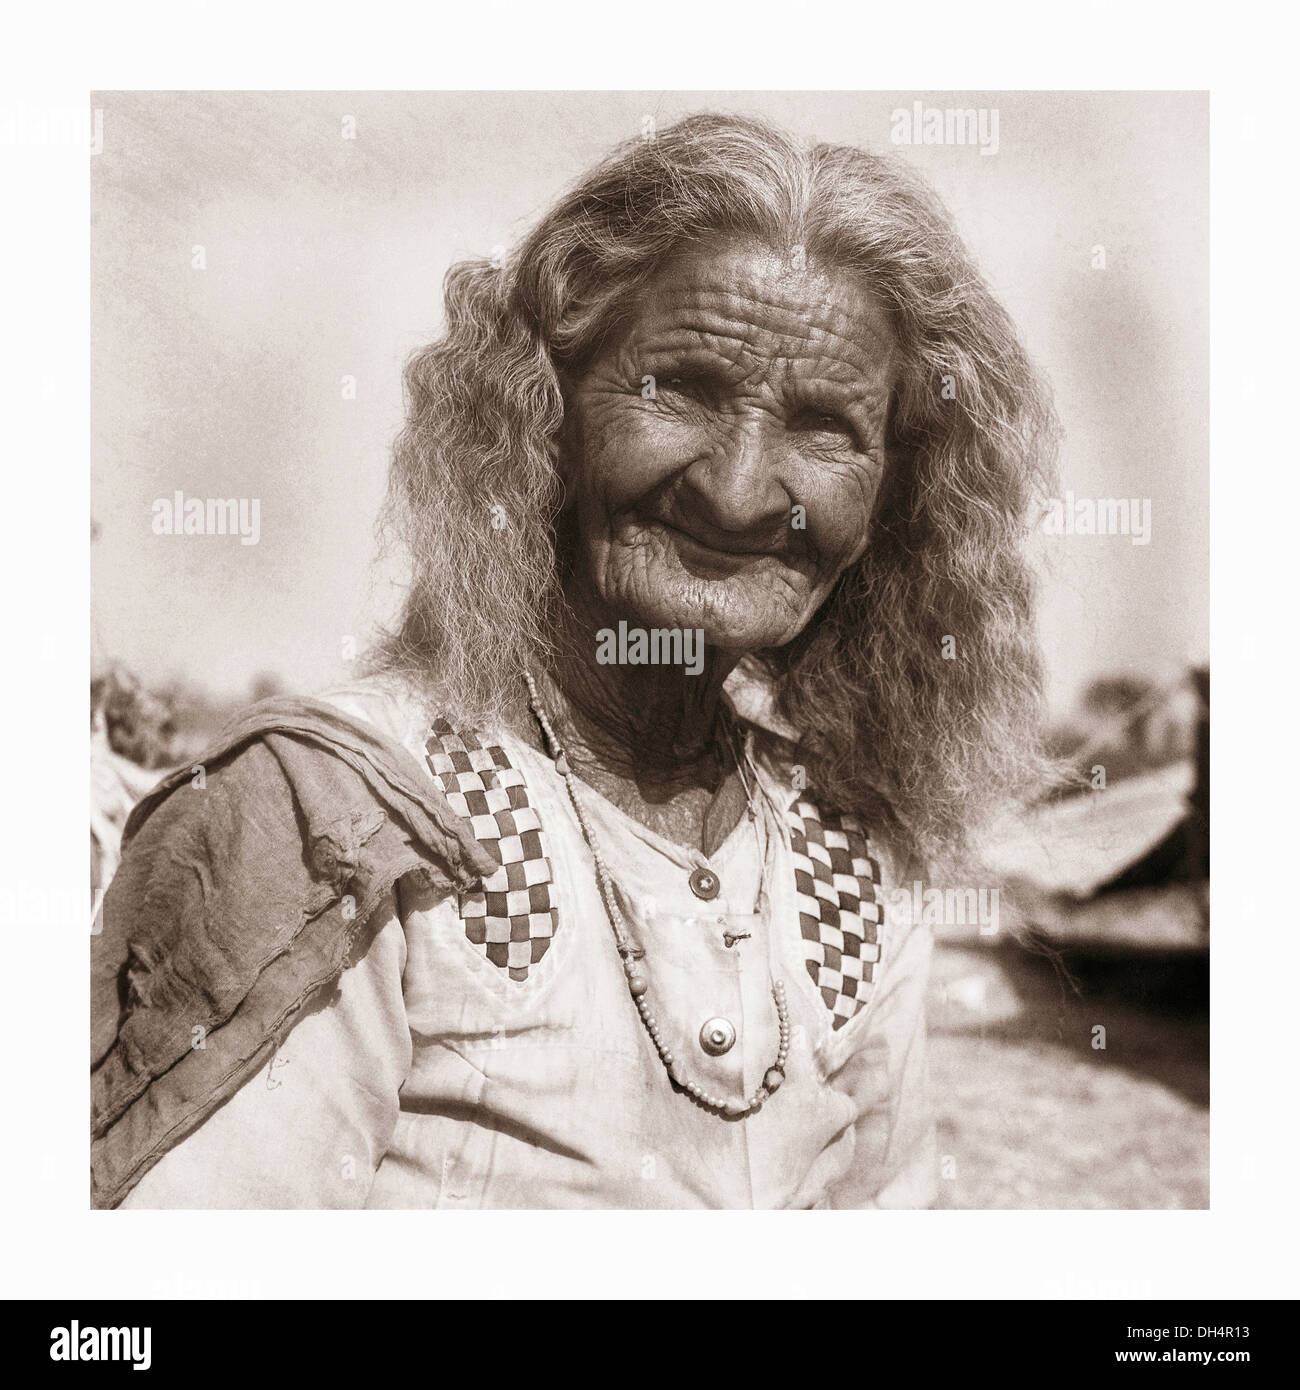 Porträt einer alten Baiga-Frau, Baiga Tribe, Madhya Pradesh, Indien. Ländliche Gesichter Indiens Stockfoto